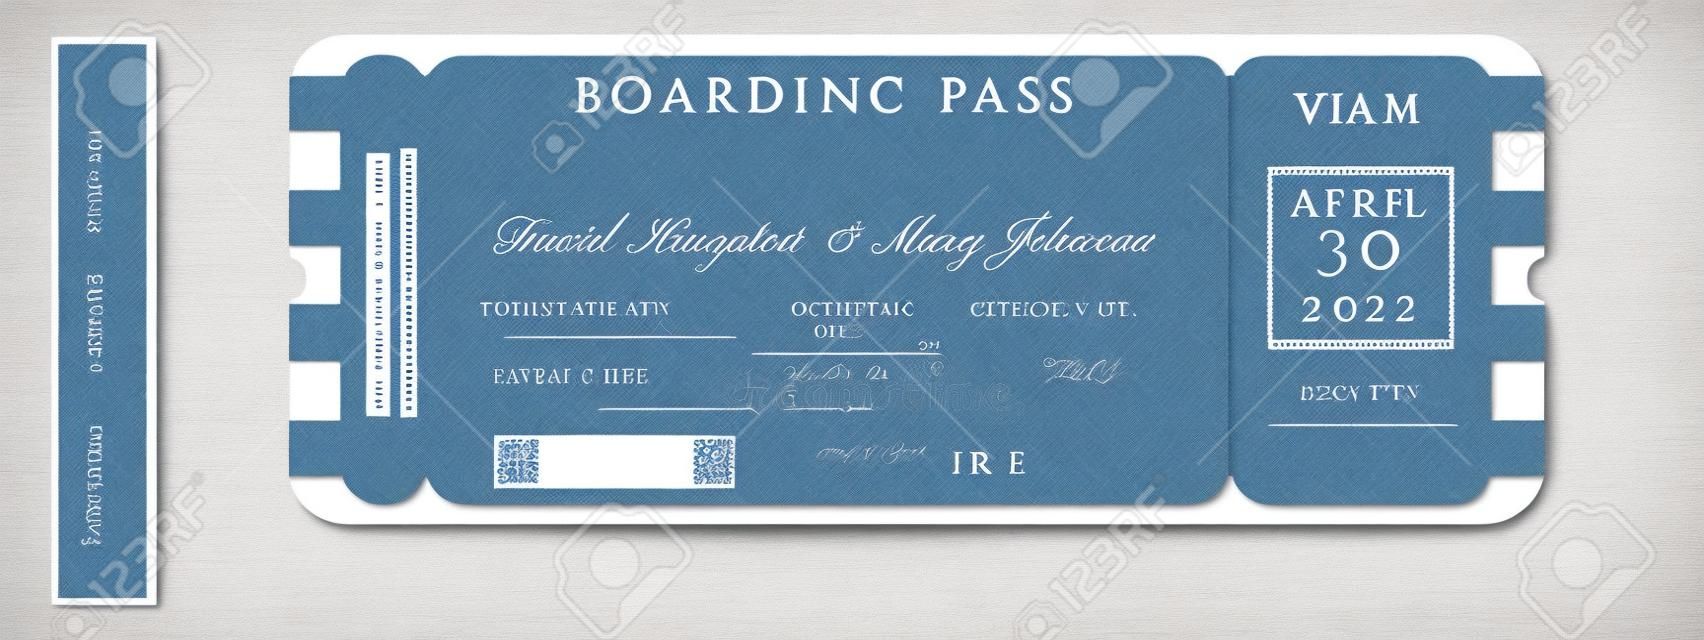 Nautische bruiloft Uitnodiging Vector Set.Boat Boarding Pass ticket sjabloon.Sailor thema in klassieke vintage stijl.Elegante zee uitnodiging kaart overlay in witte en marine blauwe kleuren. Modern luxe design.